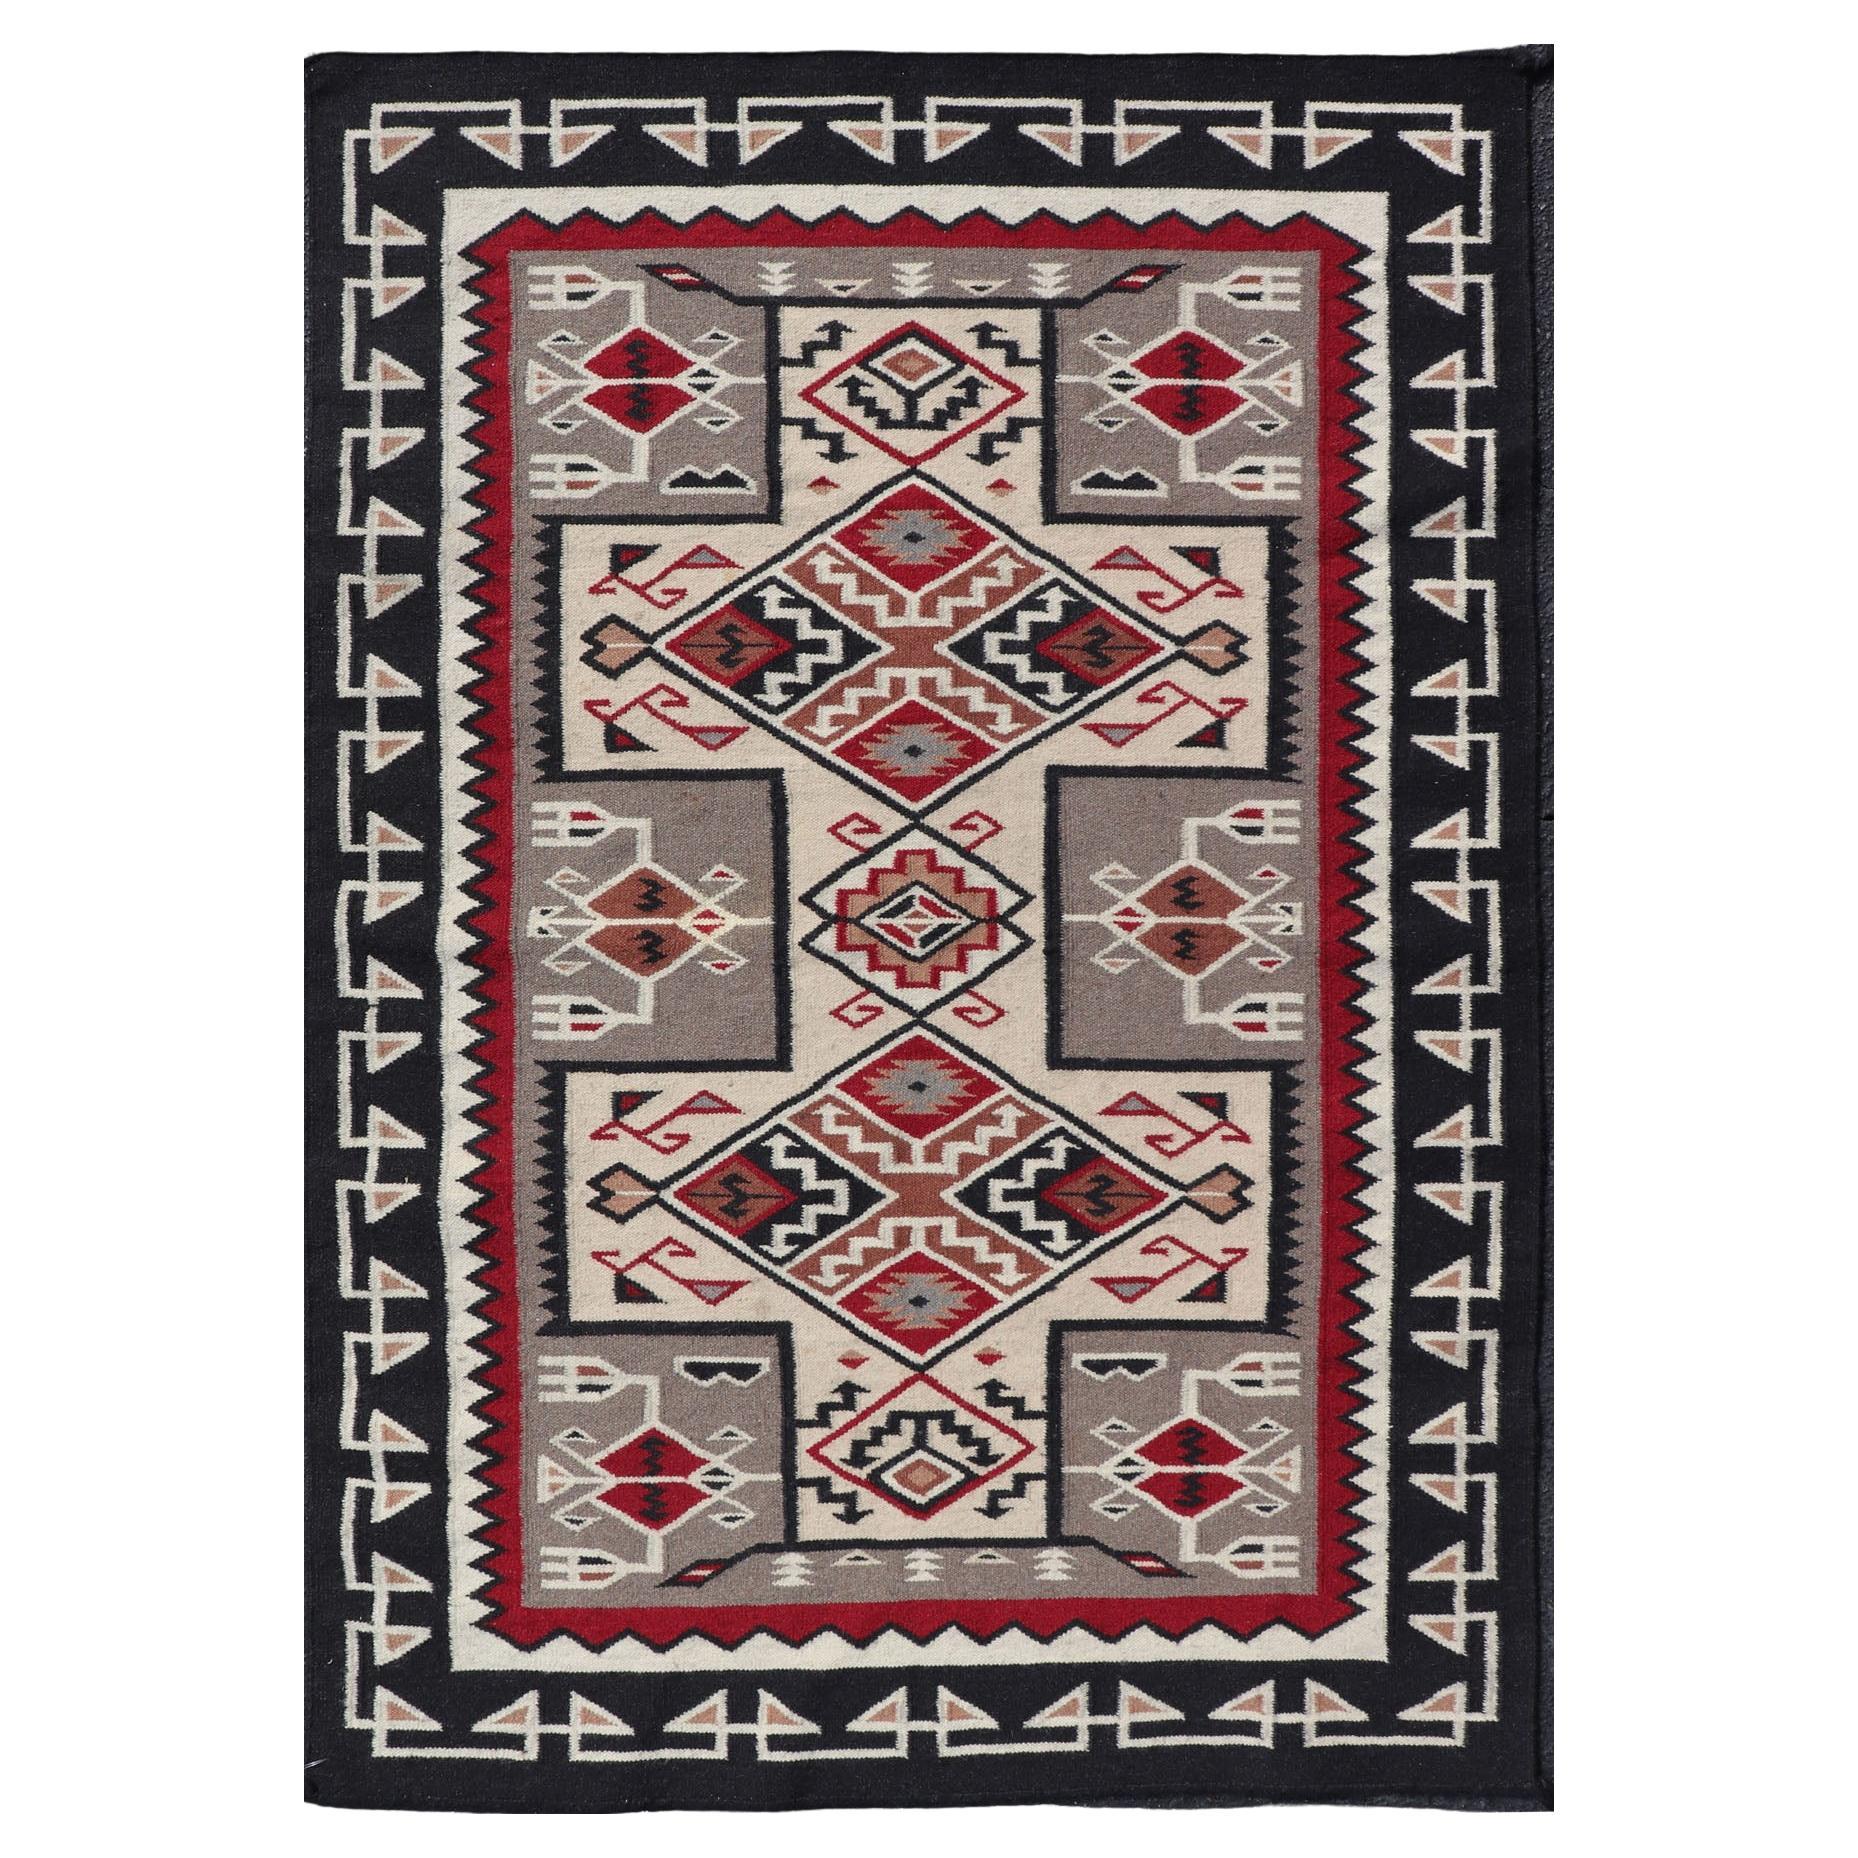 Handgewebter Teppich im Navajo-Design in Grau, Elfenbein, Schwarz und Rot